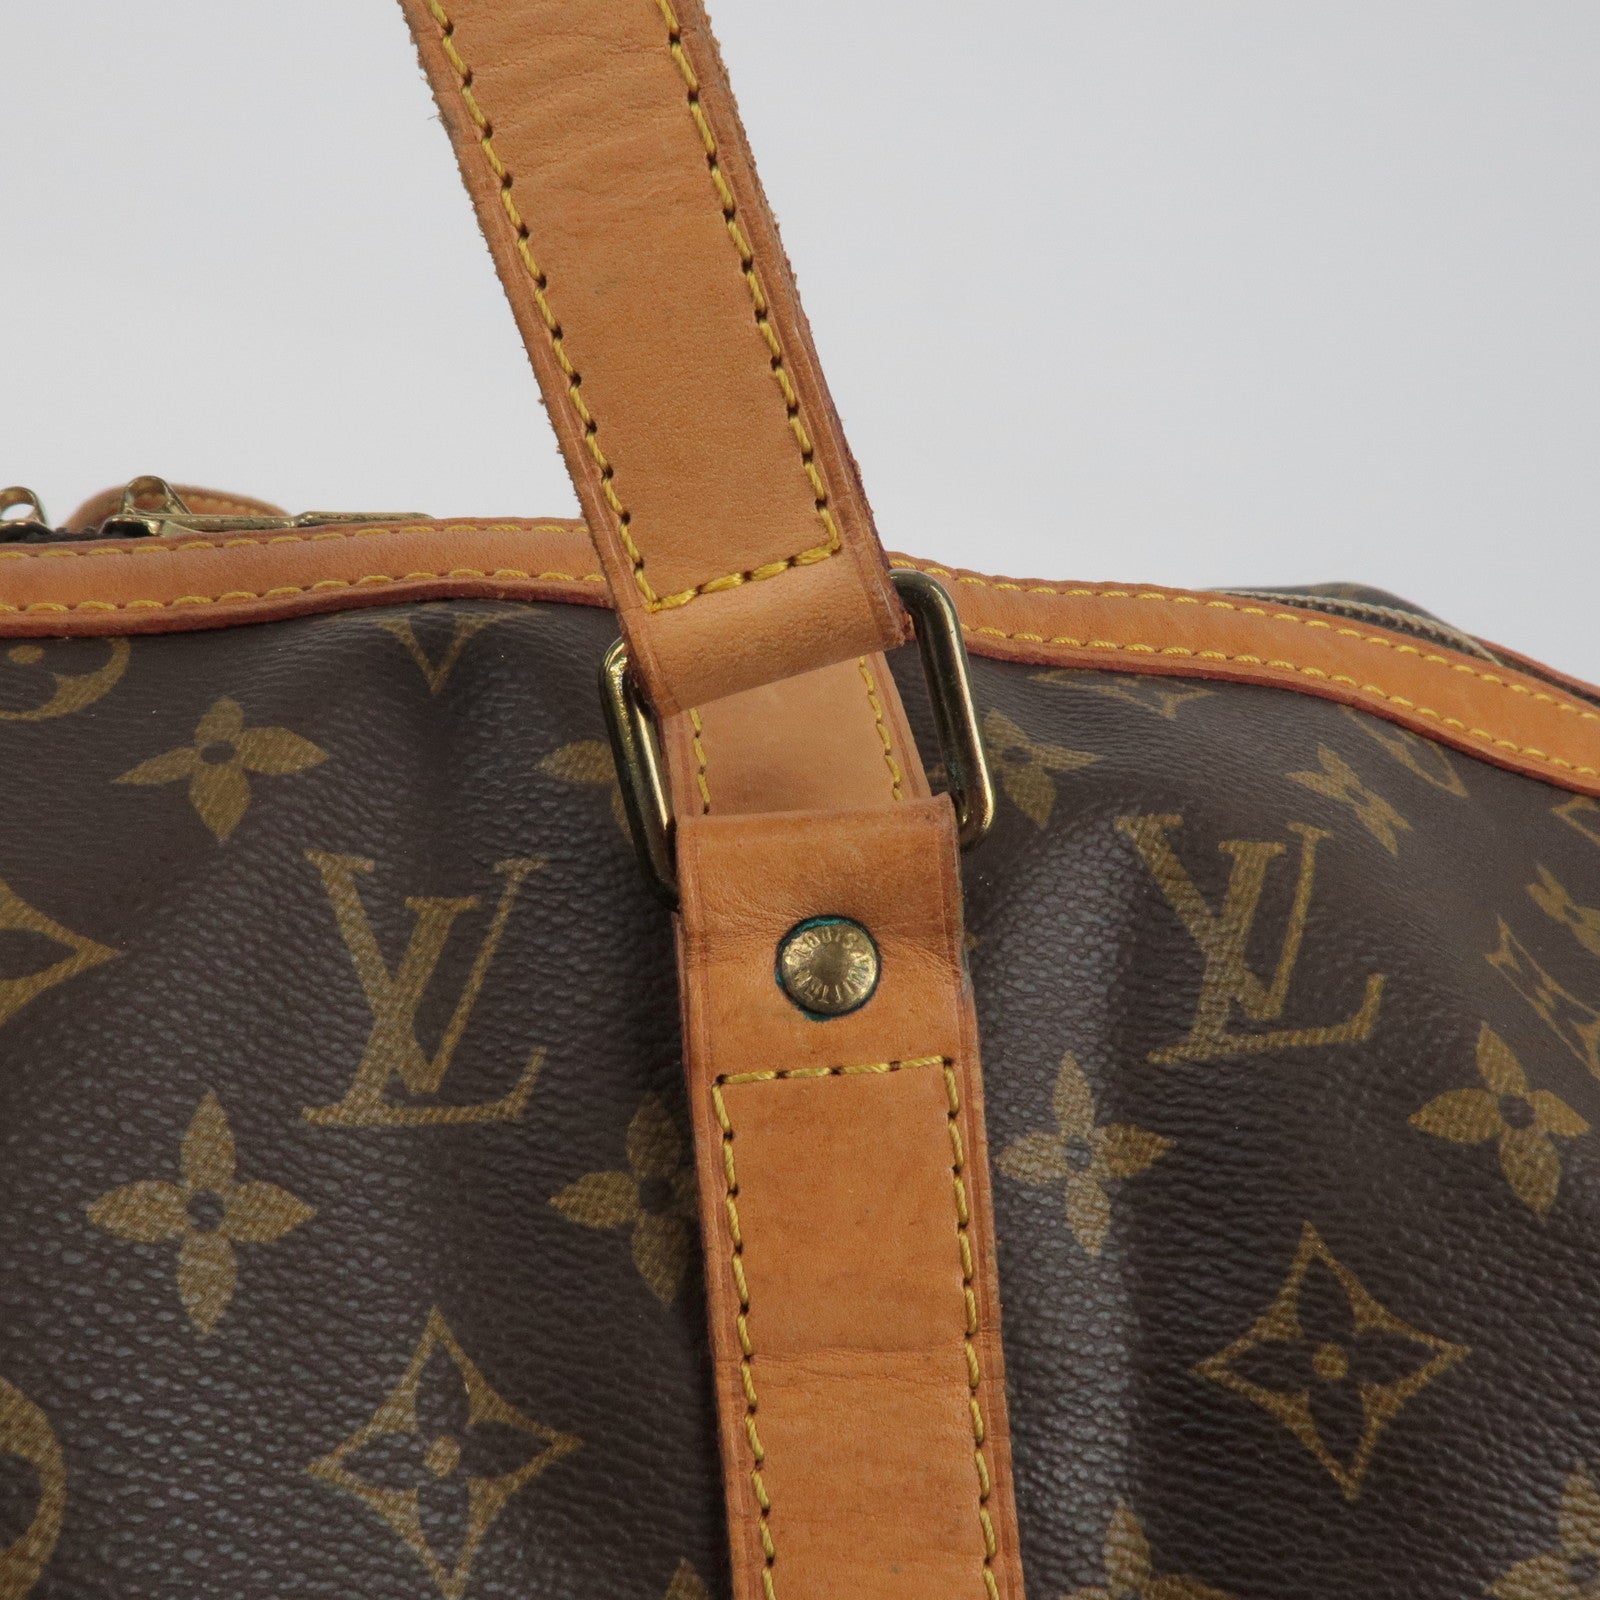 Louis Vuitton Vintage Monogram Canvas Sac Souple 35 Duffle Bag